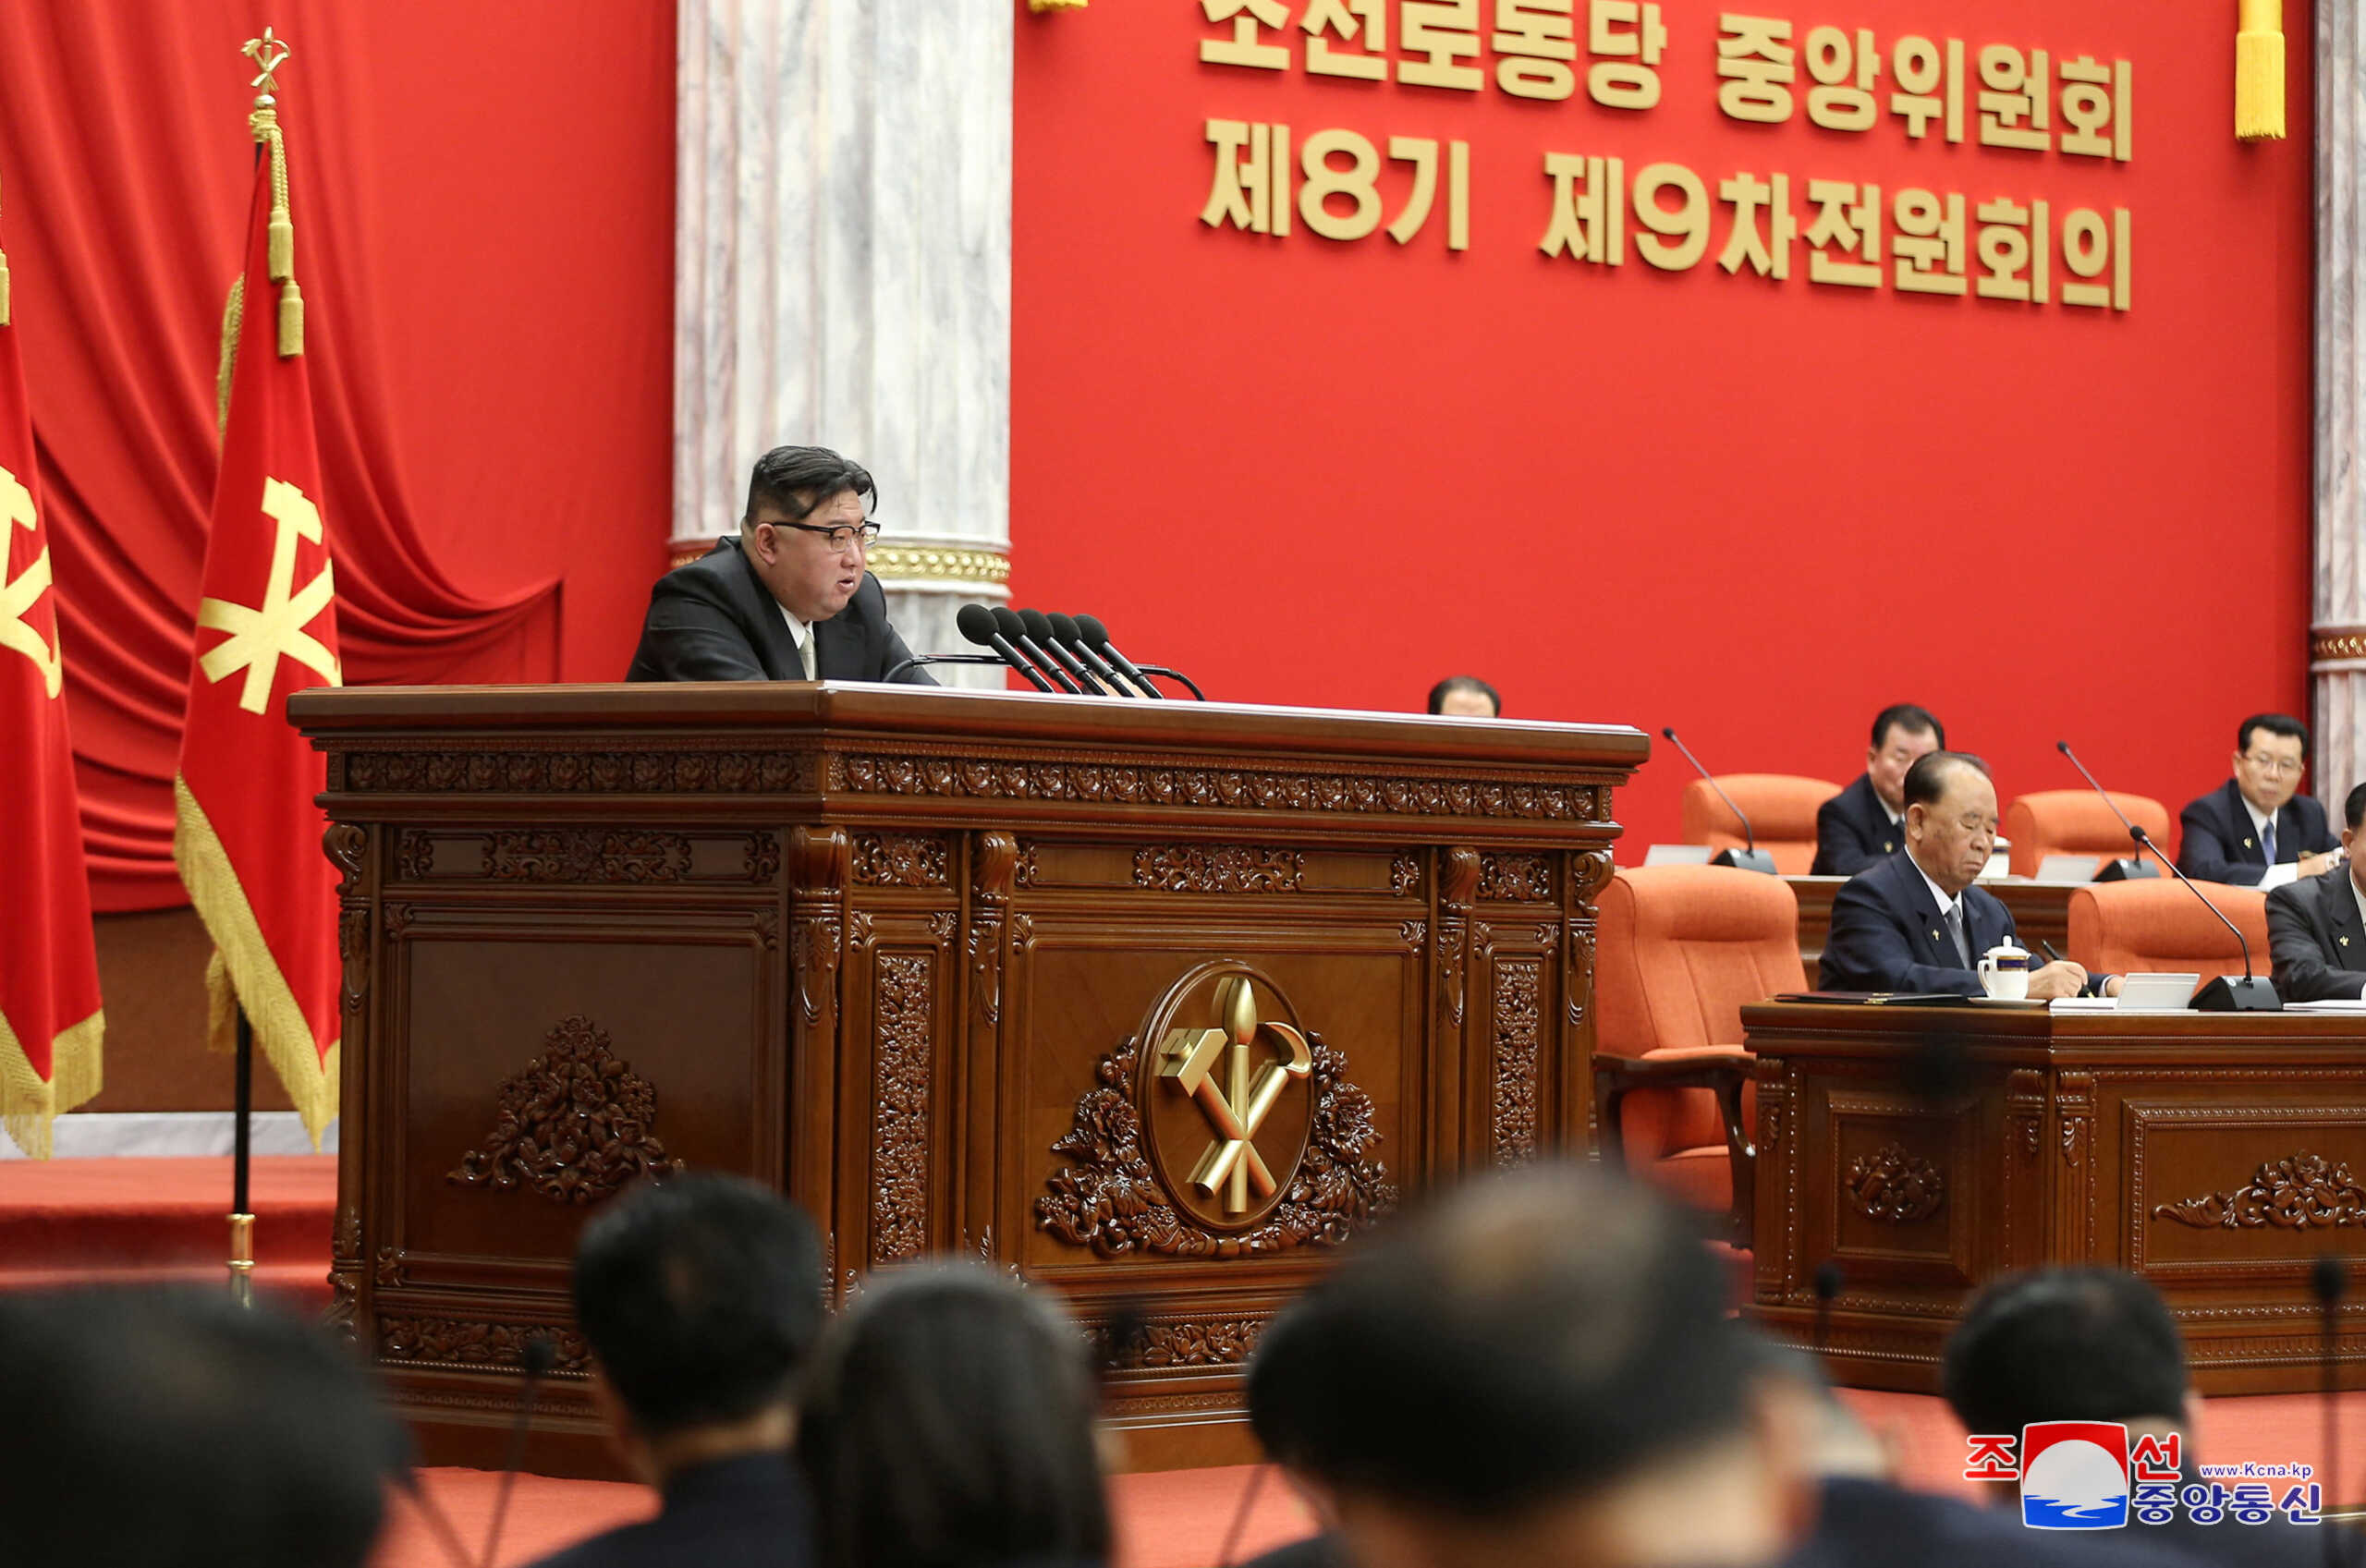 Ο Κιμ Γιονγκ Ουν προετοιμάζει τη Βόρεια Κορέα για πόλεμο κατά των ΗΠΑ